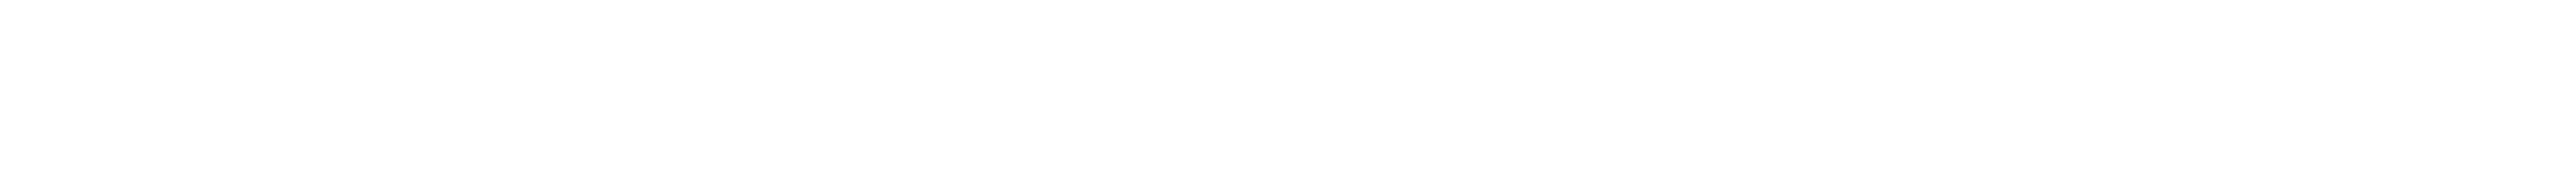 محمد بكر مرسي علي الجمل stylish signature style. Best Handwritten Sign (Antro_Vectra) for my name. Handwritten Signature Collection Ideas for my name محمد بكر مرسي علي الجمل. محمد بكر مرسي علي الجمل signature style 6 images and pictures png